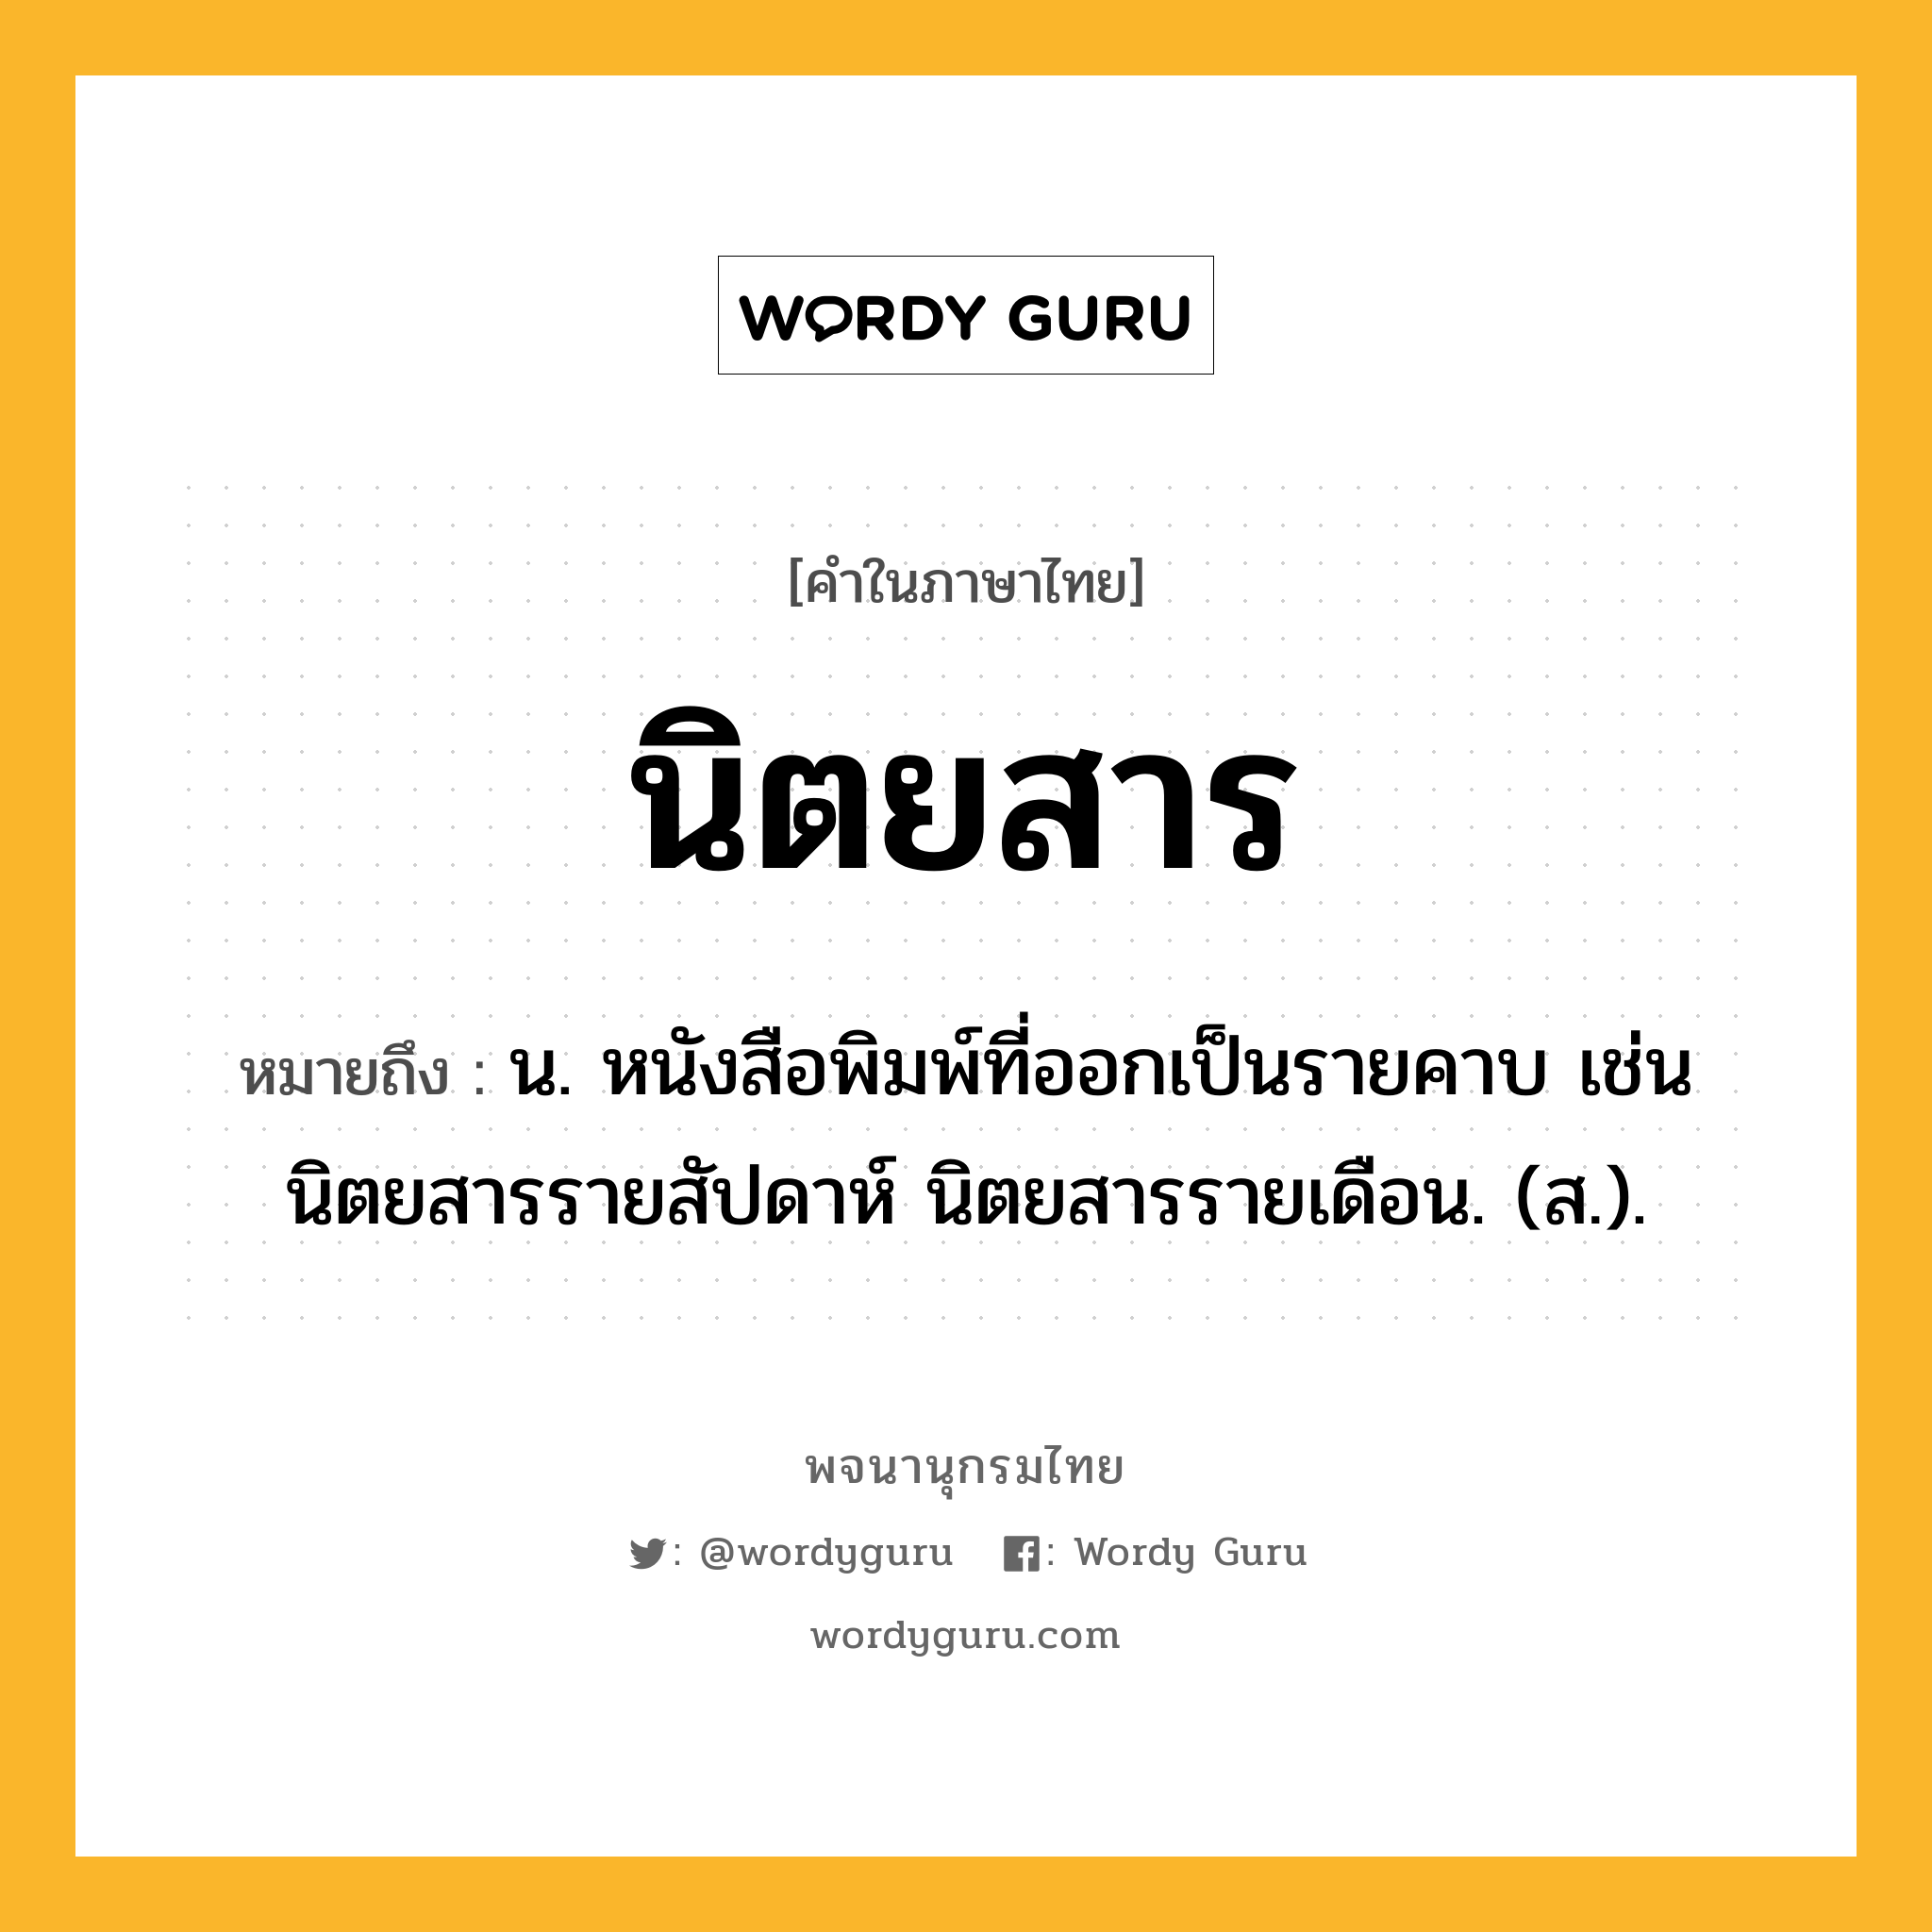 นิตยสาร ความหมาย หมายถึงอะไร?, คำในภาษาไทย นิตยสาร หมายถึง น. หนังสือพิมพ์ที่ออกเป็นรายคาบ เช่น นิตยสารรายสัปดาห์ นิตยสารรายเดือน. (ส.).